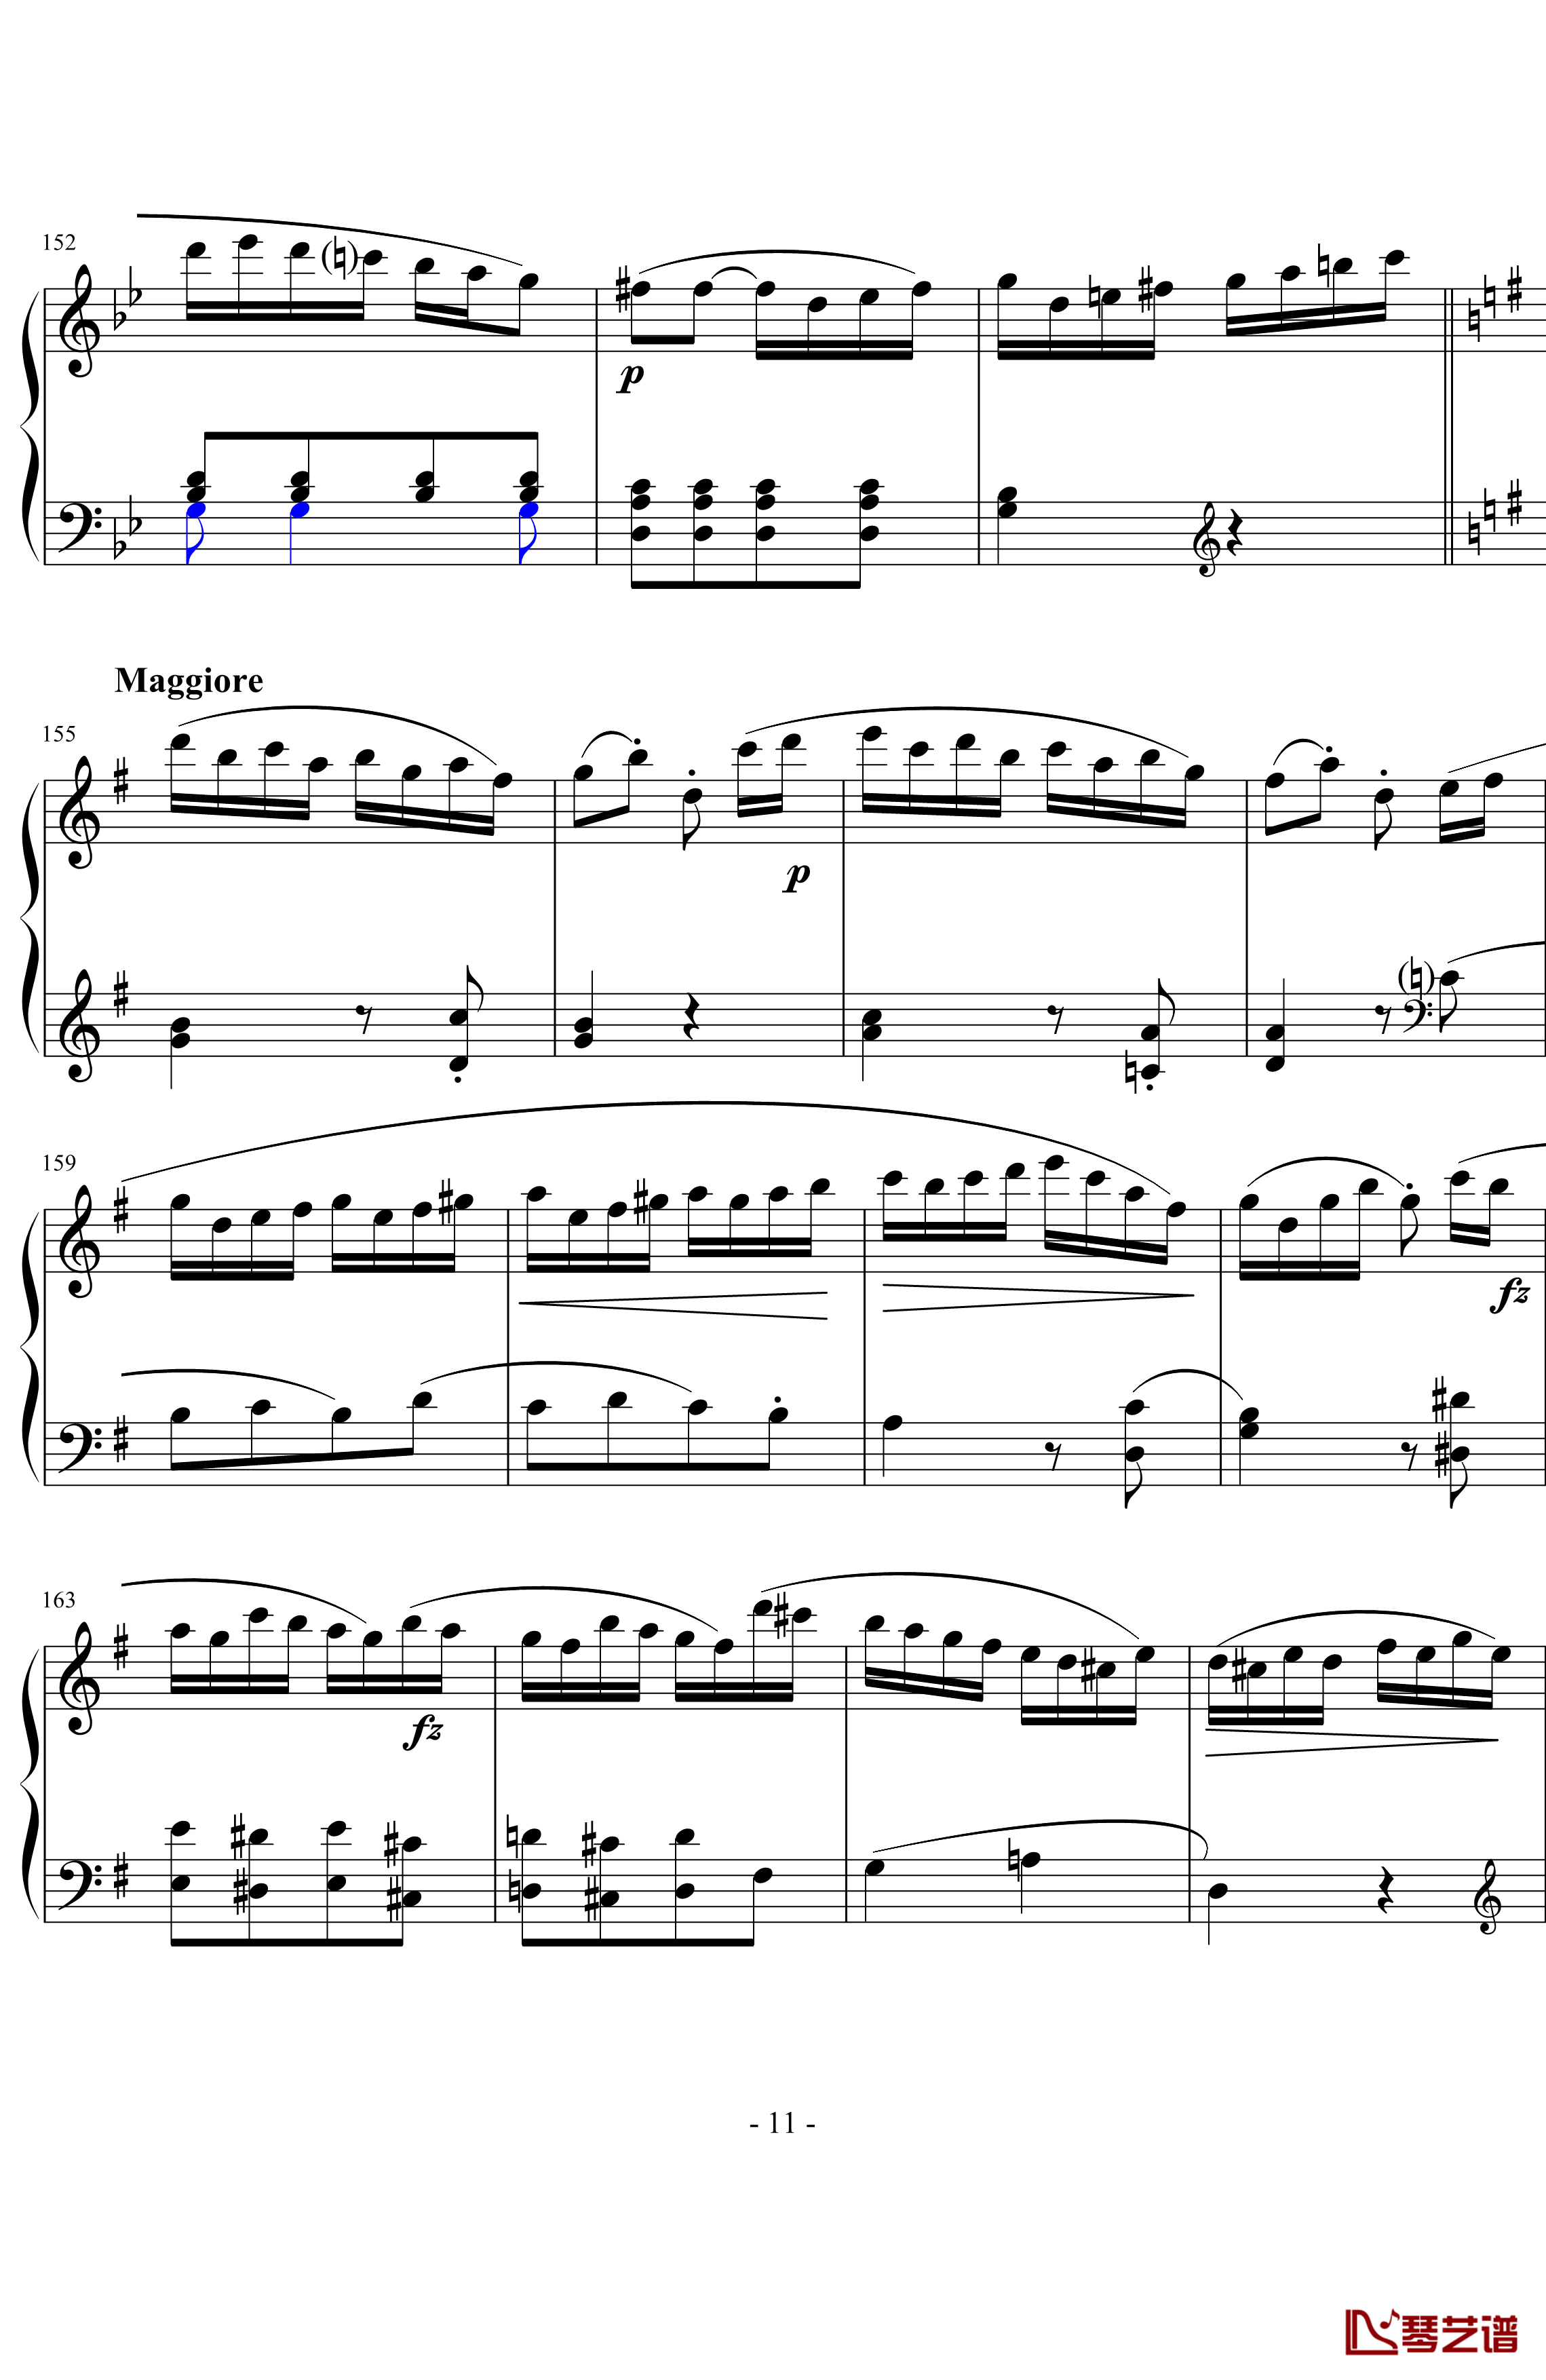 吉普赛回旋曲钢琴谱-海顿11